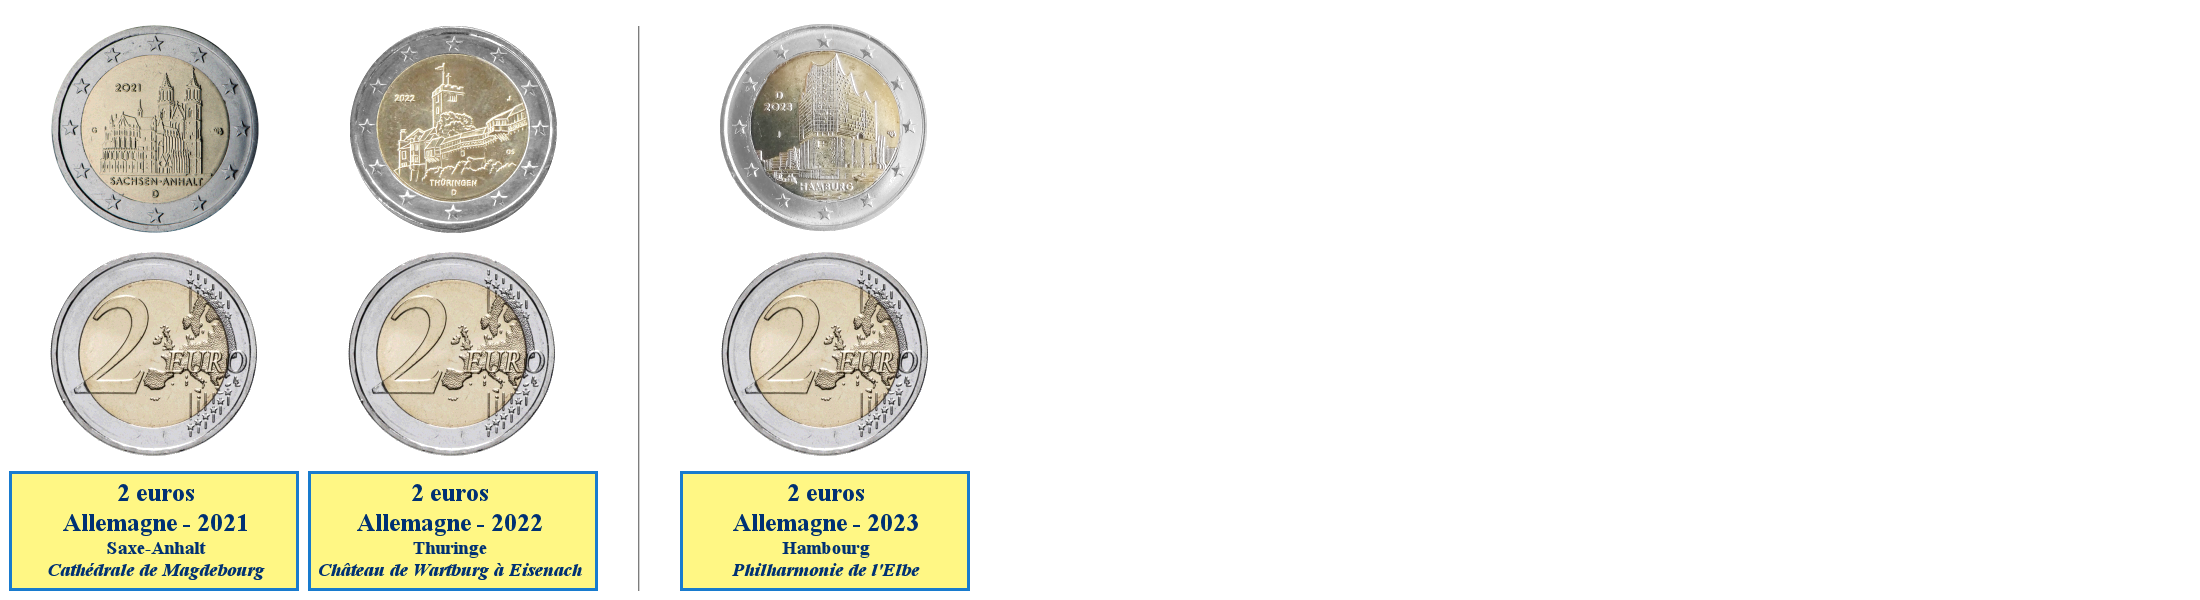 Photos de pièces de monnaies de 2 euros commémoratives des Länder allemands 2021-...